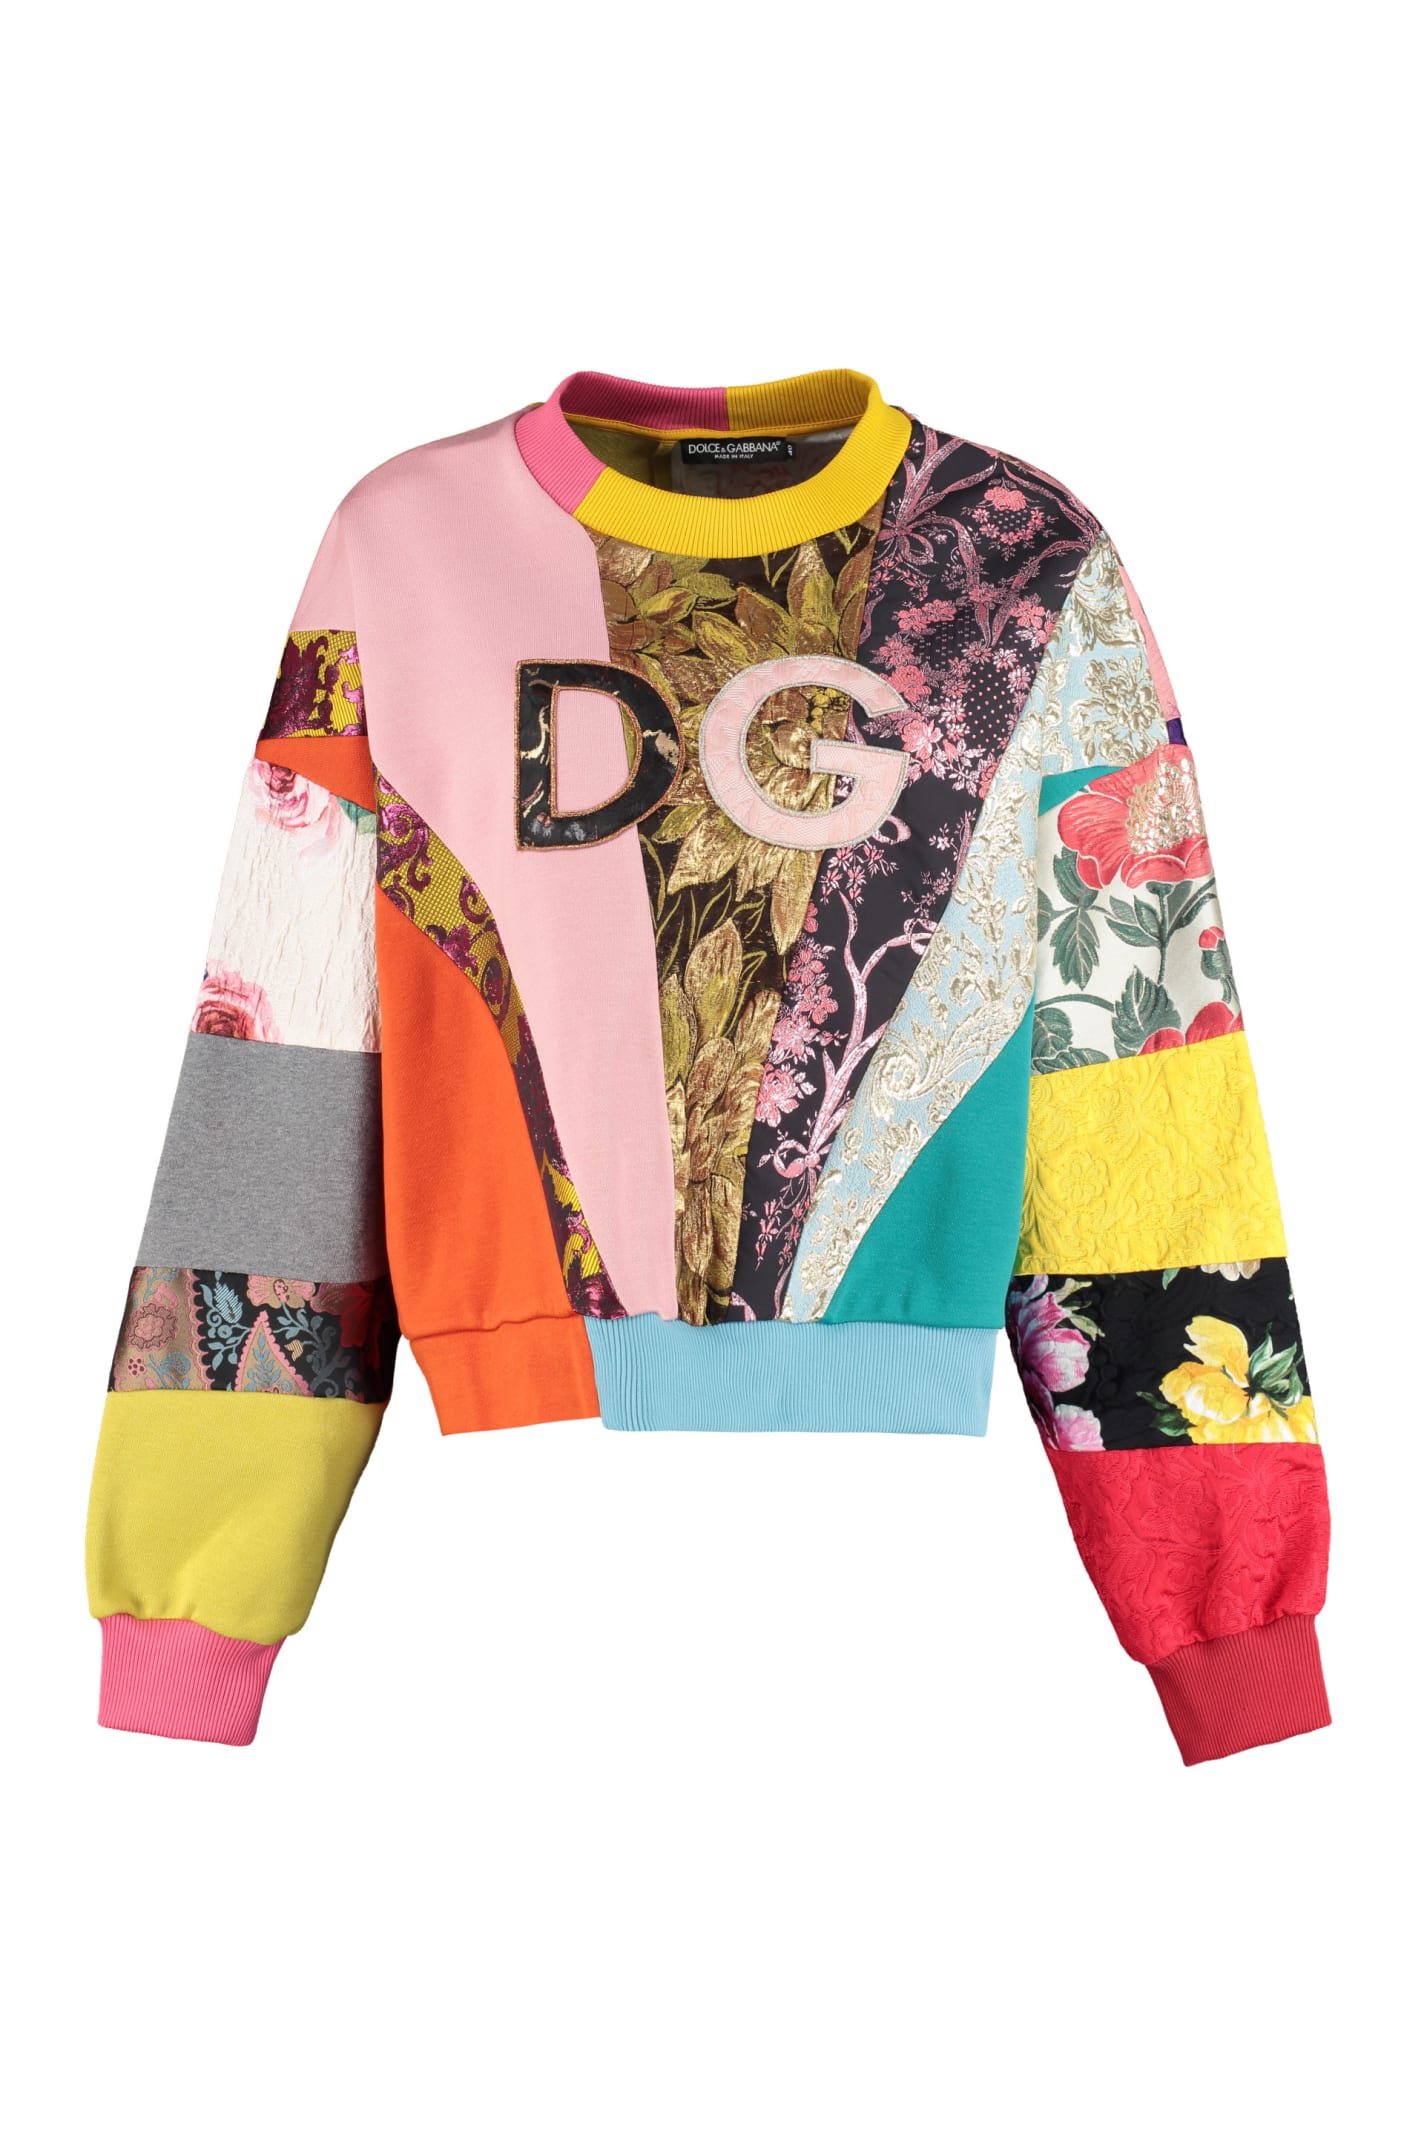 Dolce & Gabbana Embroidered Logo Crew-neck Sweatshirt